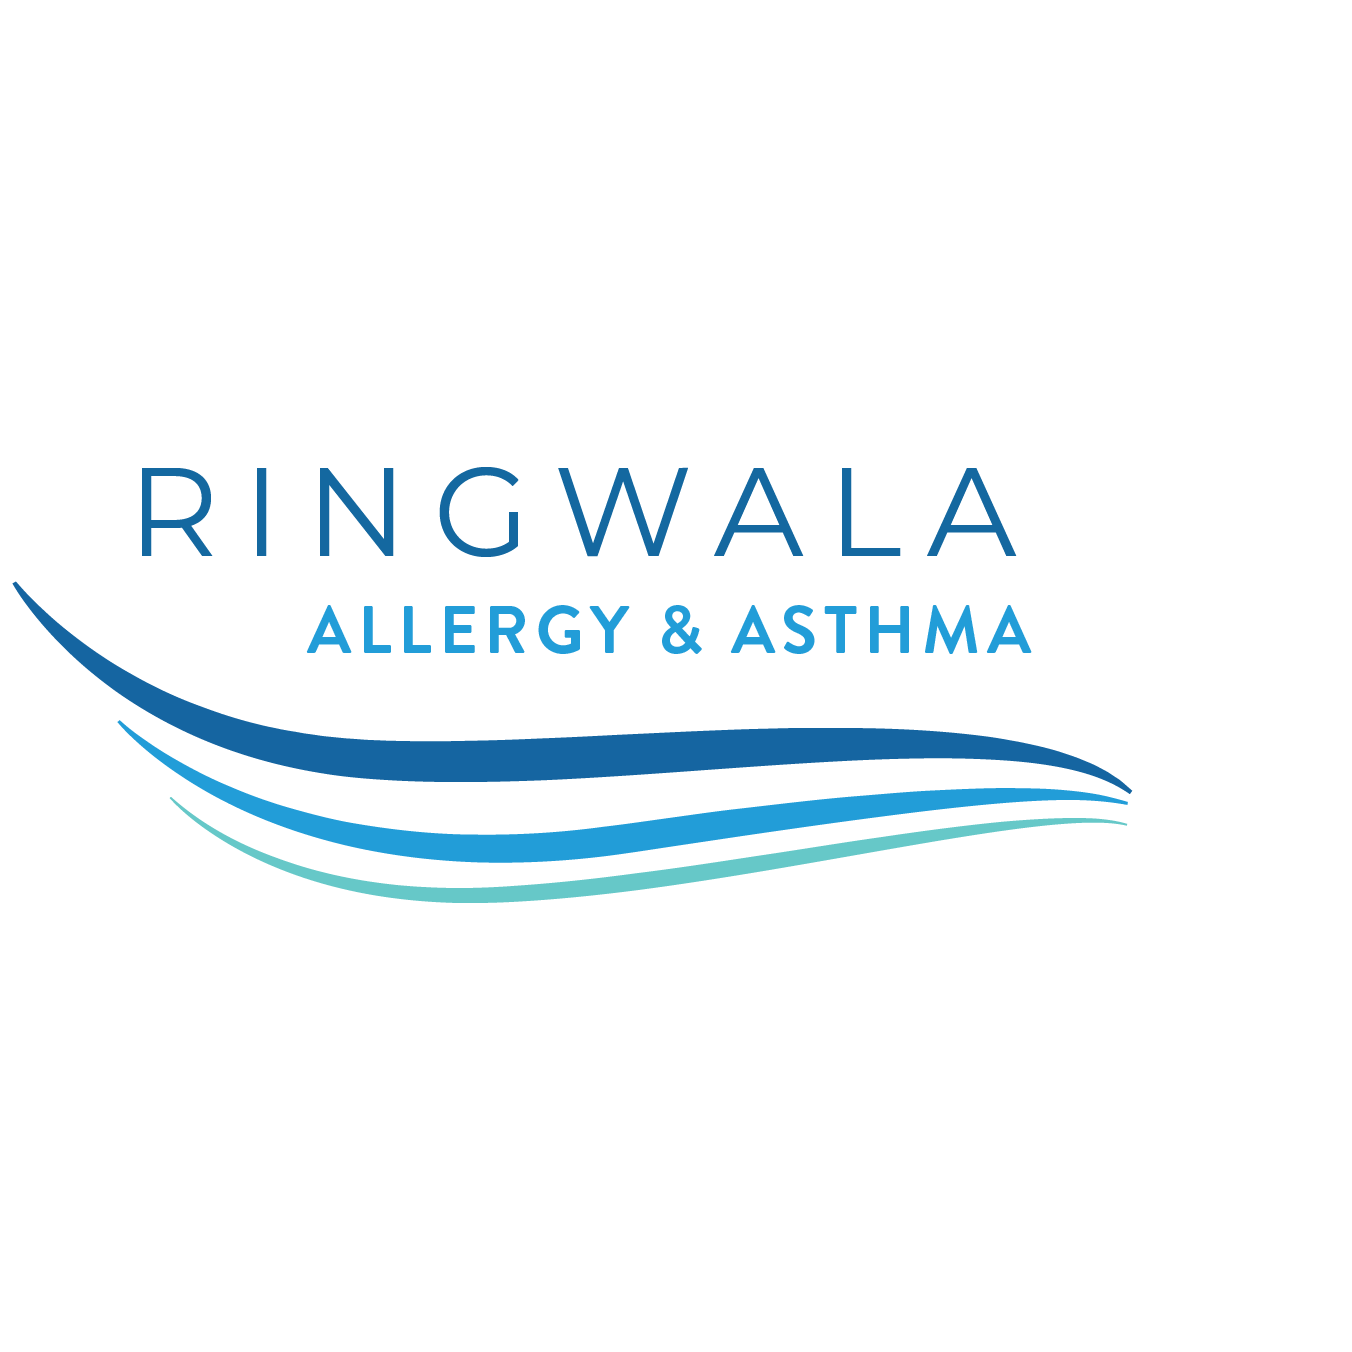 Ringwala Allergy & Asthma - Kenosha, WI 53144 - (262)657-9390 | ShowMeLocal.com